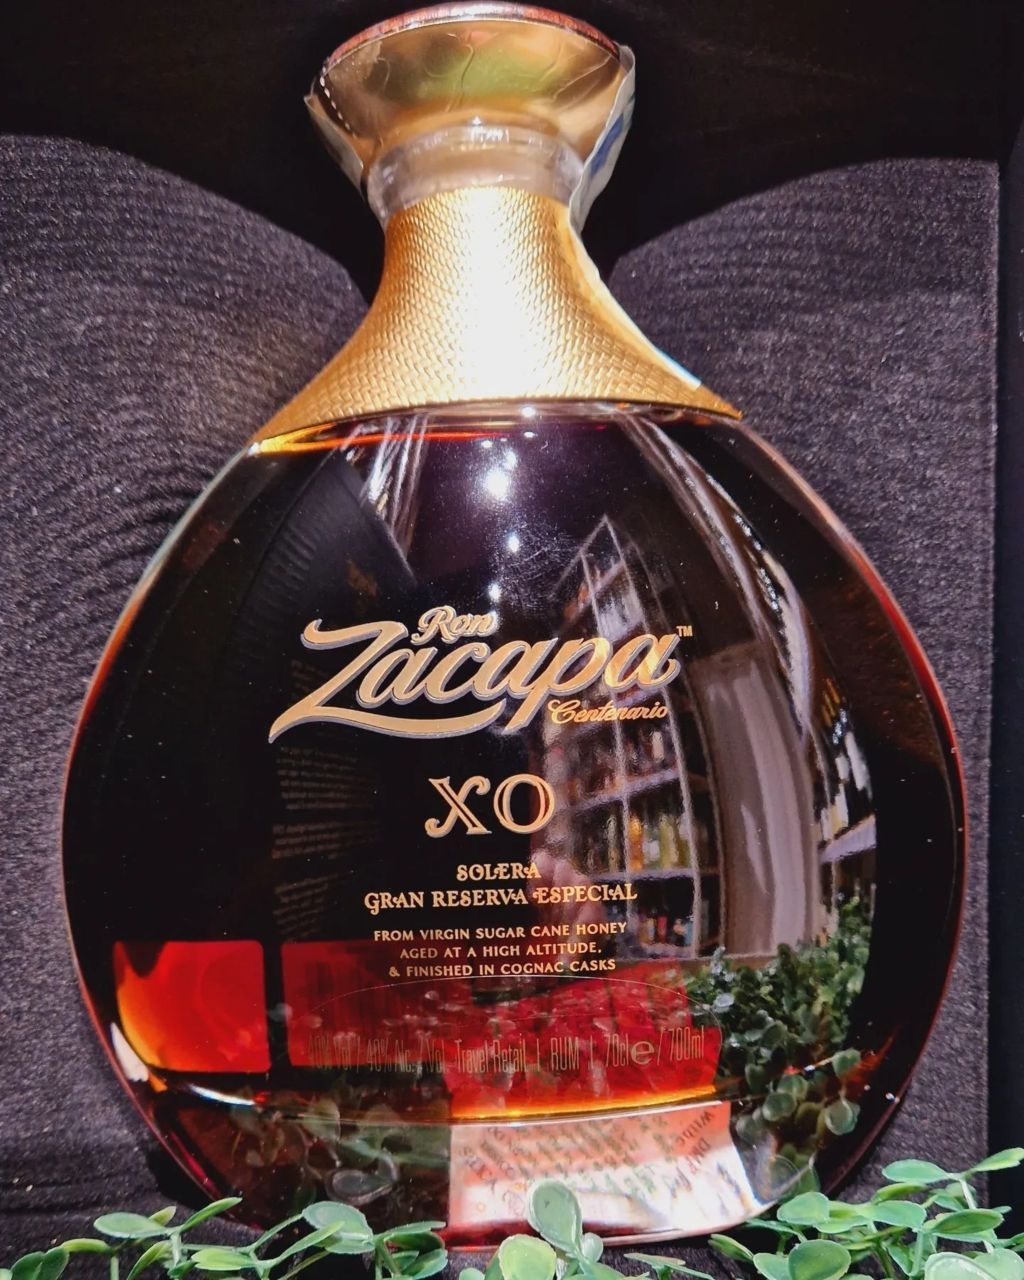 Ron Zacapa - Centenario XO Solera Gran Reserva Especial Rum